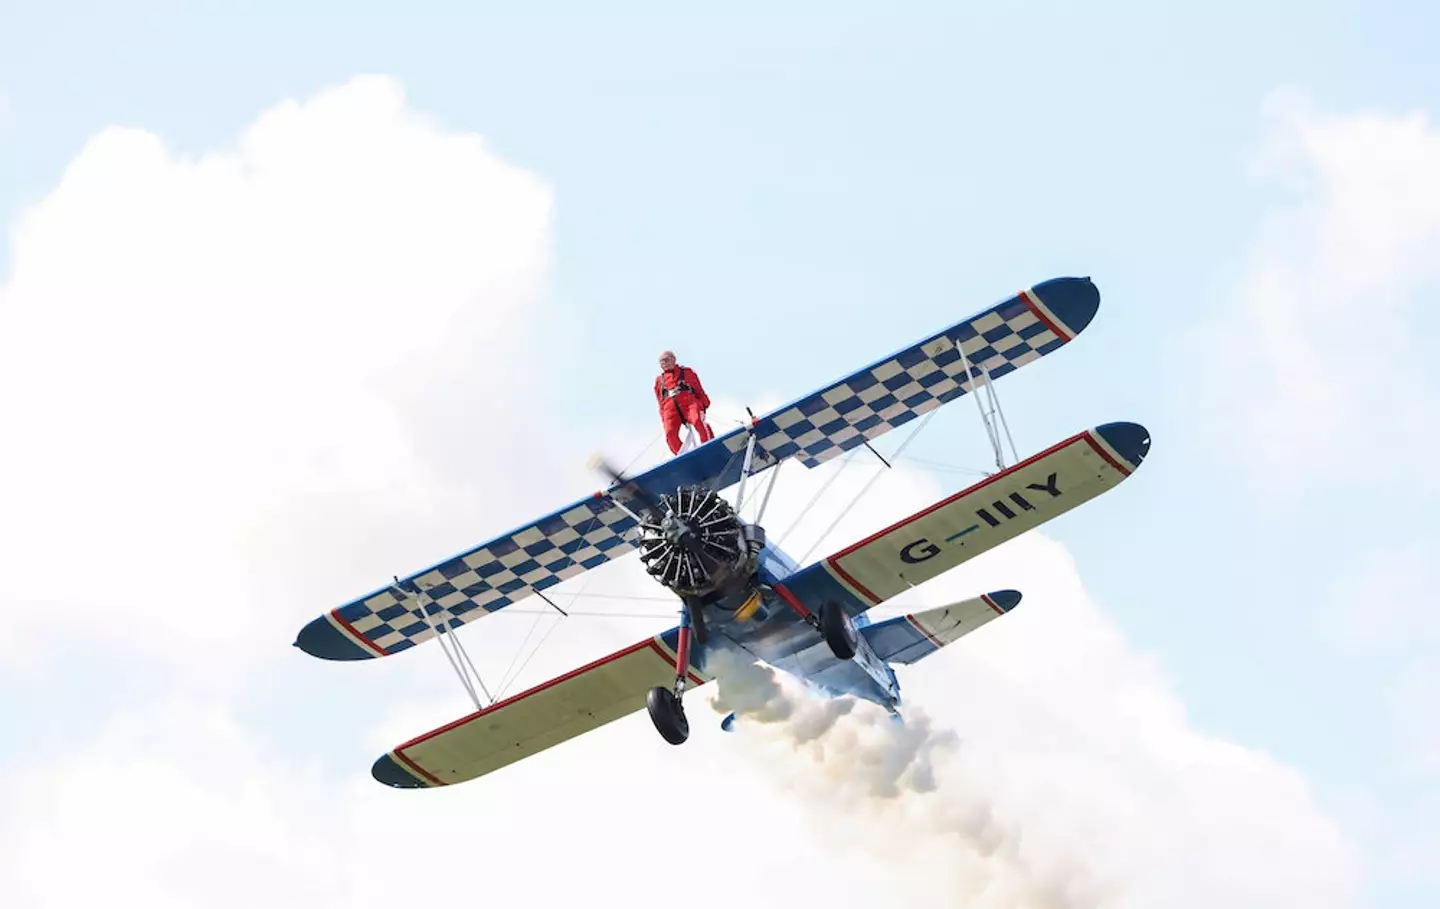 Ivor first became interested in flying back in 1932.